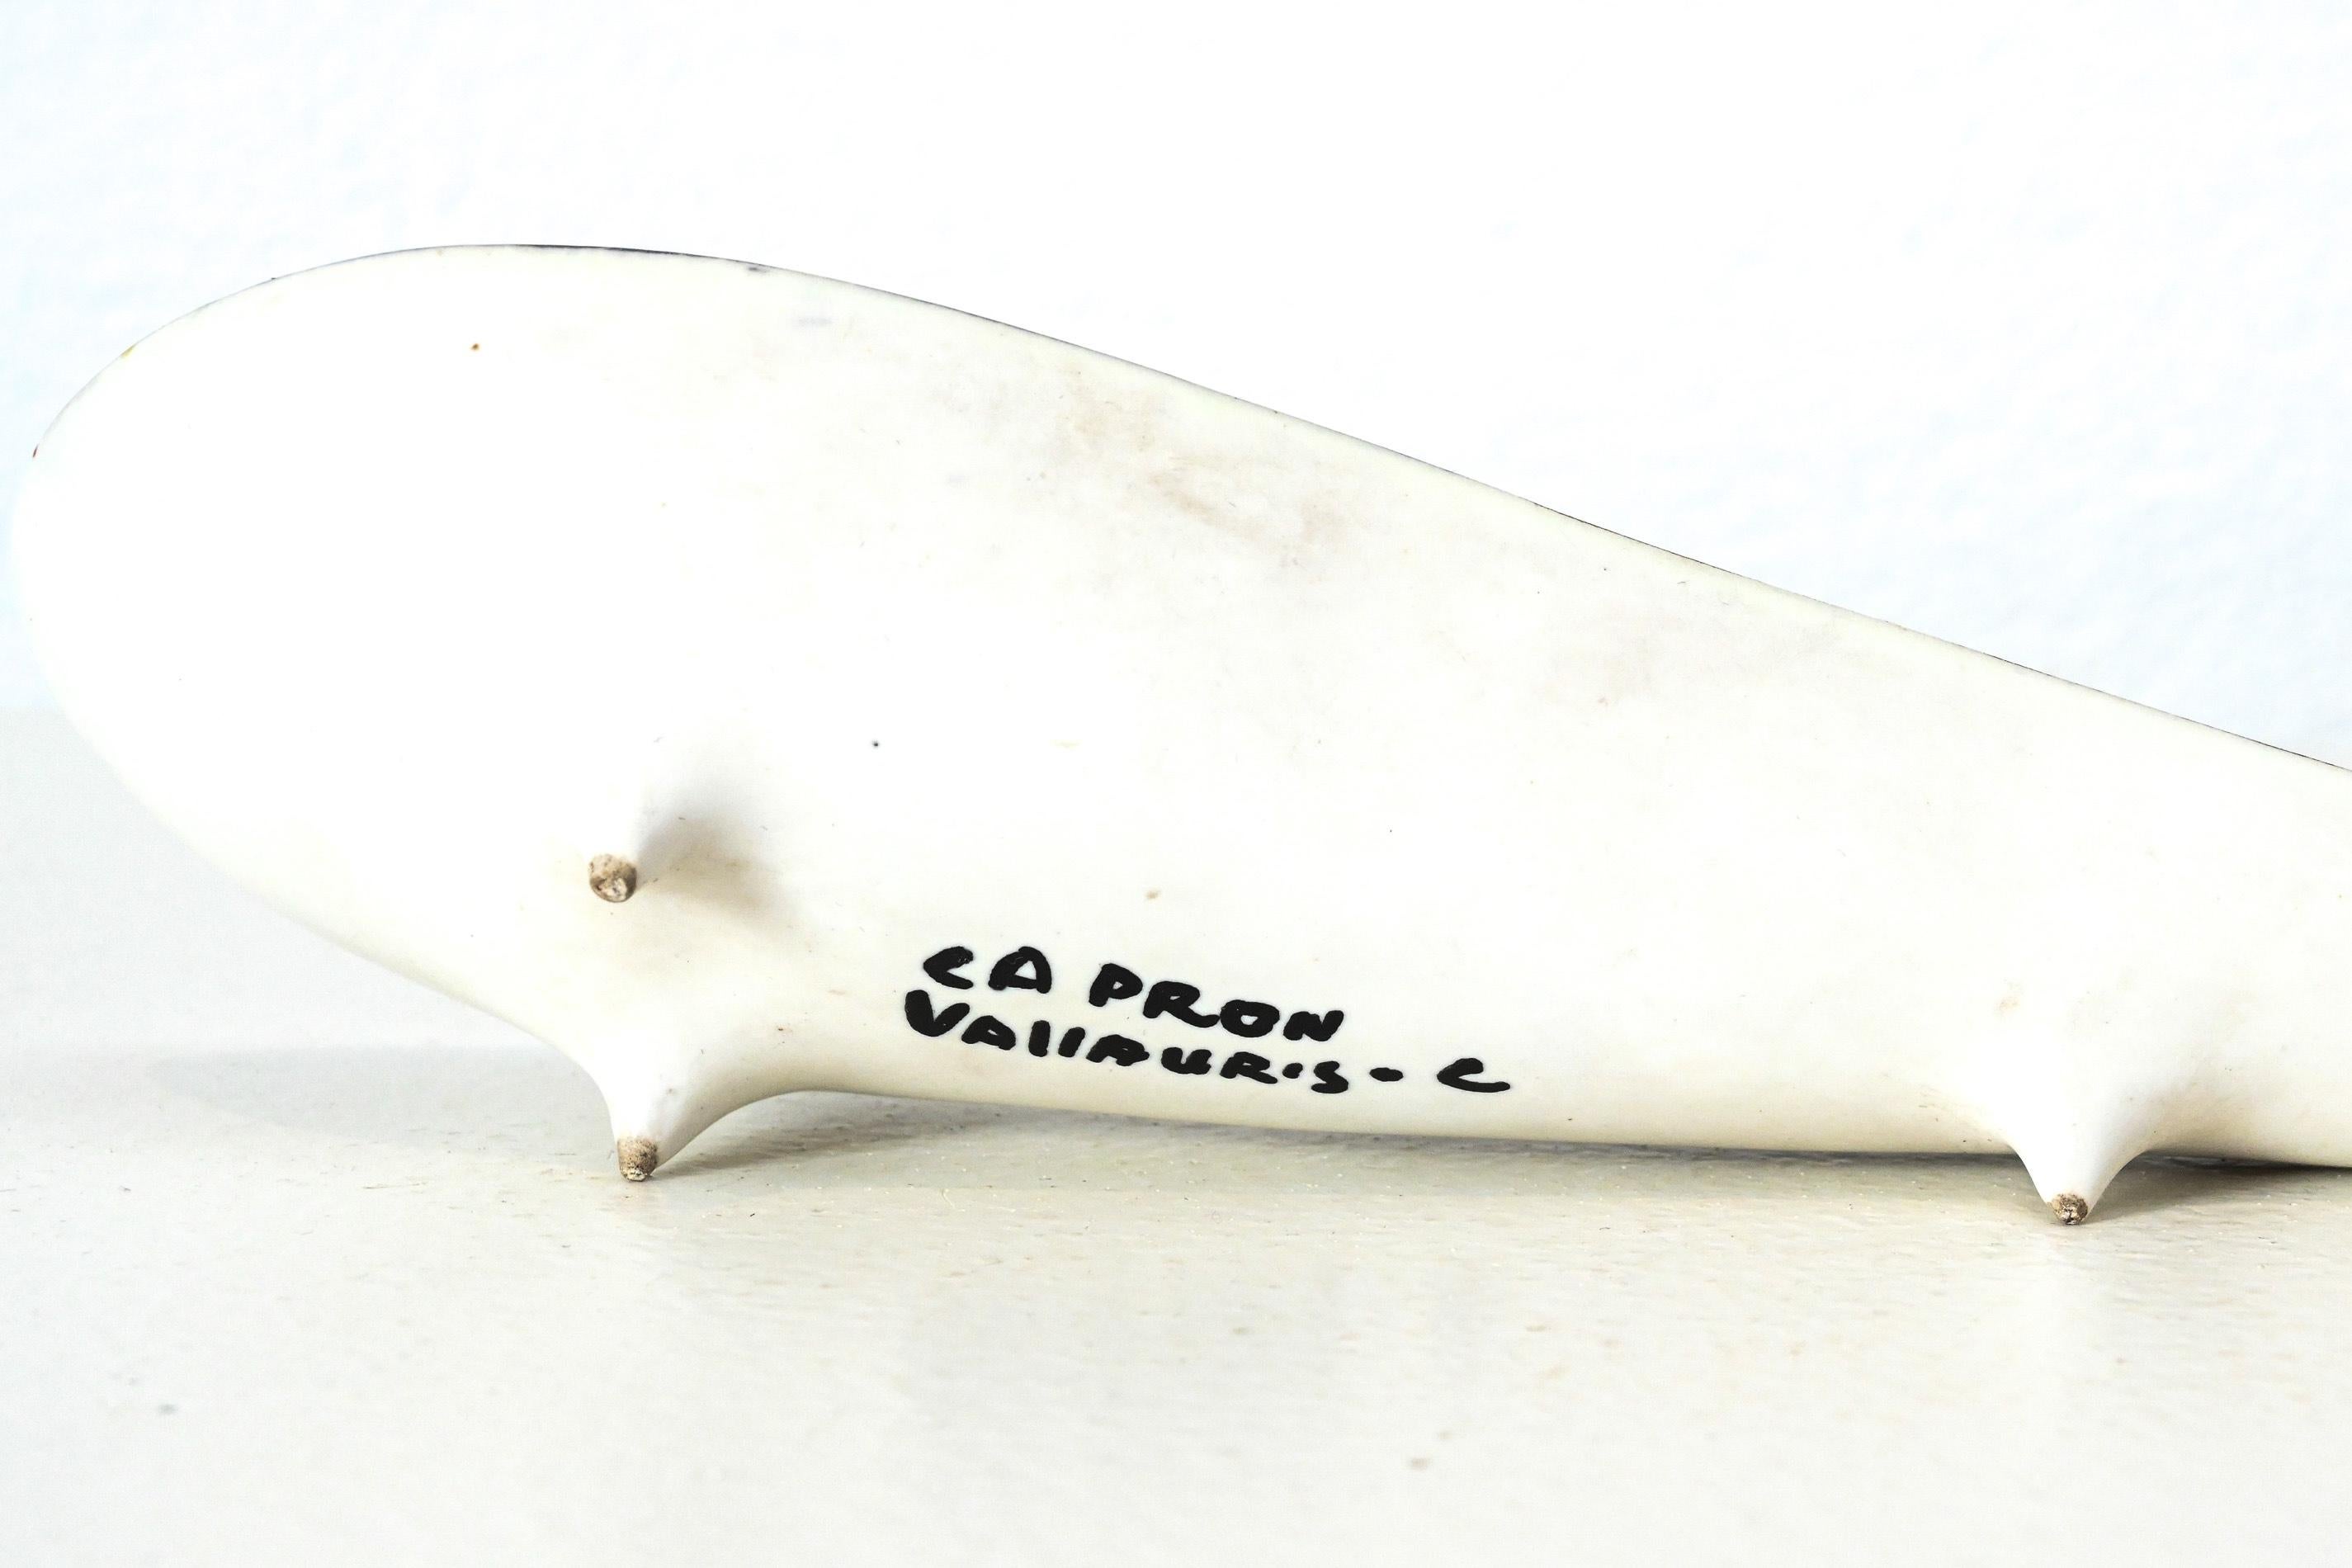 Vide poche en céramique Roger Capron en forme de goutte d'eau

avec décoration de pyjama.

Produit dans ses ateliers de Vallauris dans les années 1950